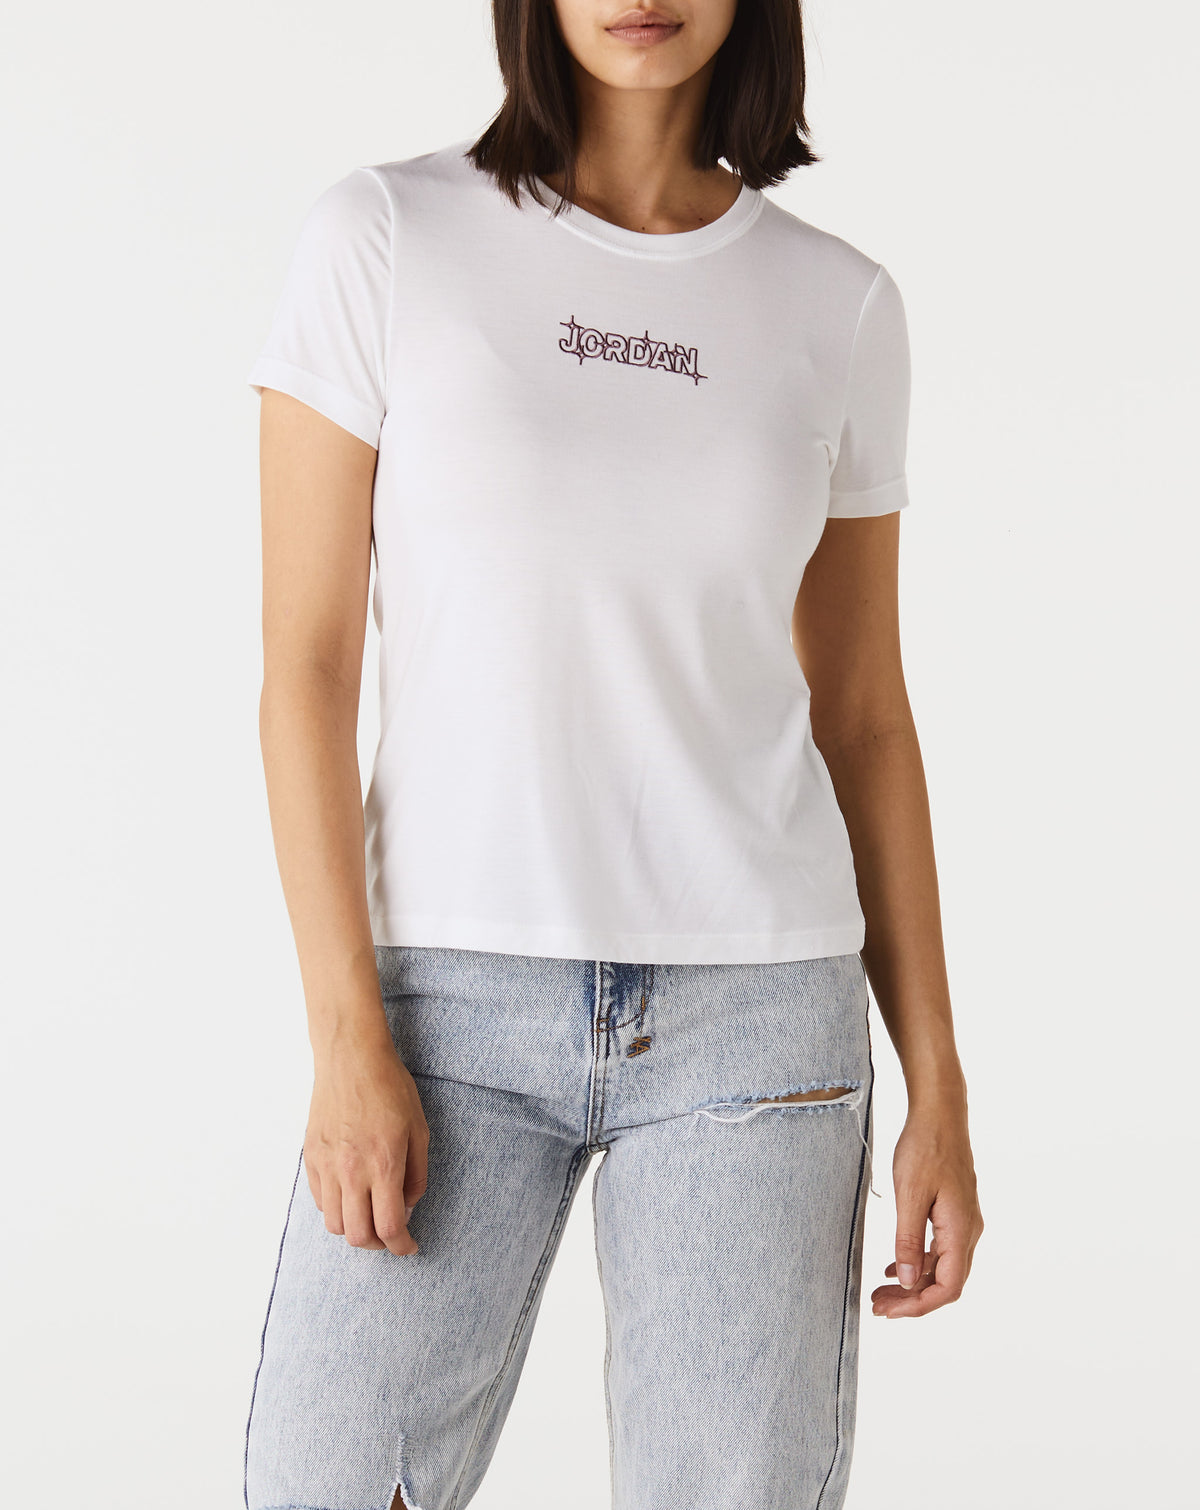 Air Jordan Women's Slim Graphic T-Shirt - Rule of Next Apparel